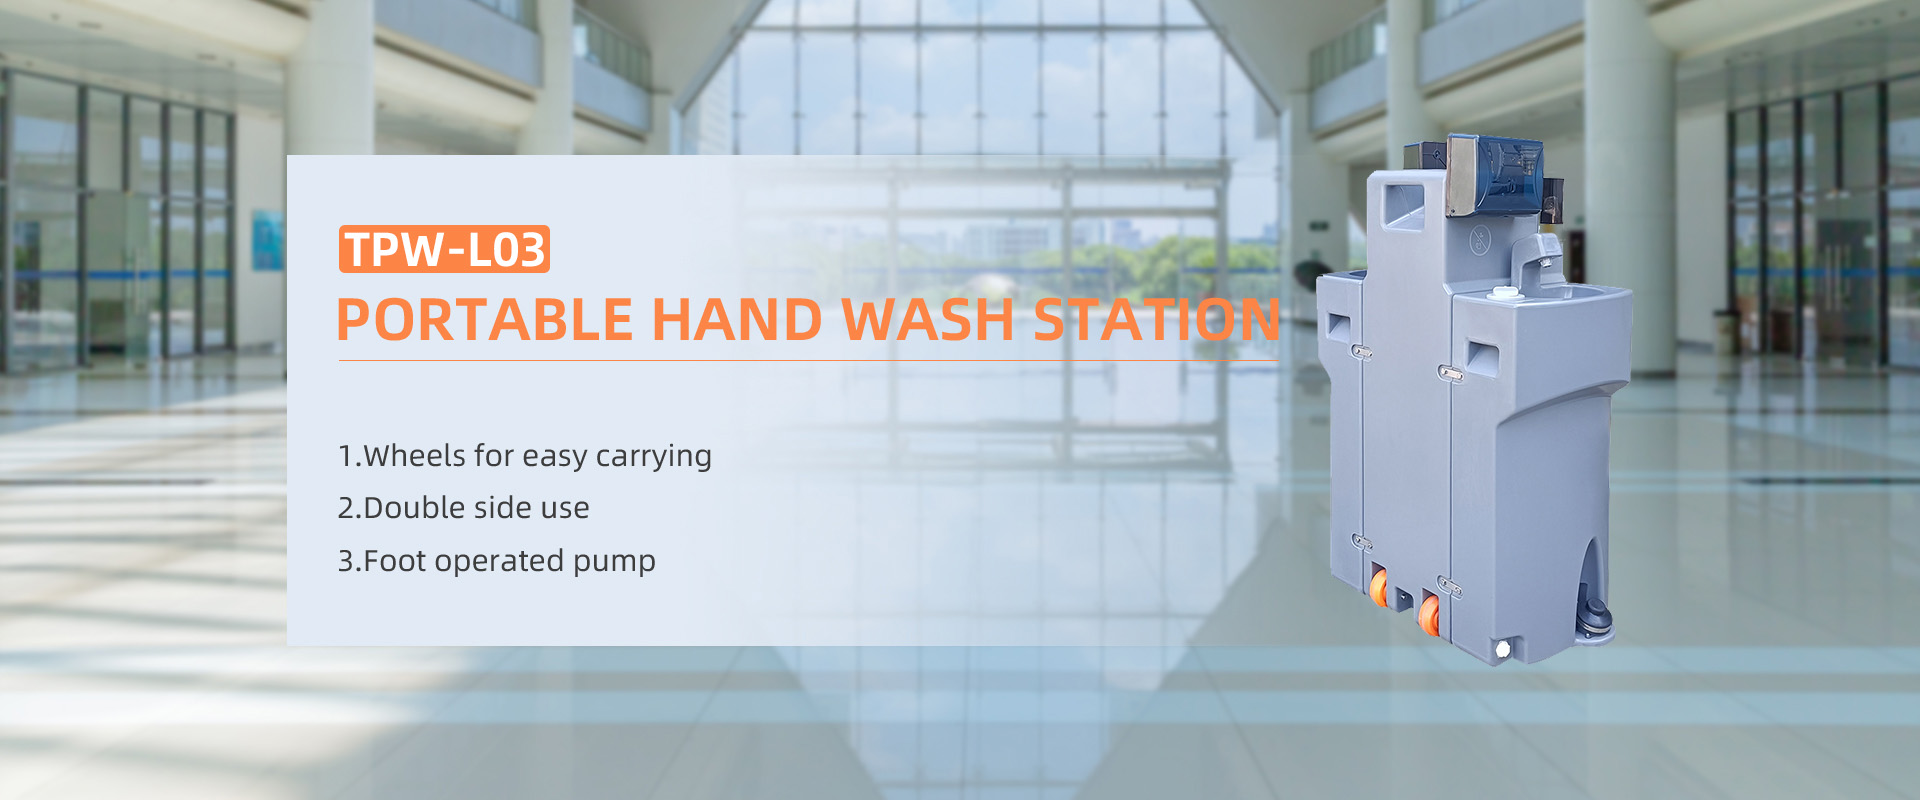 stesen basuh tangan mudah alih